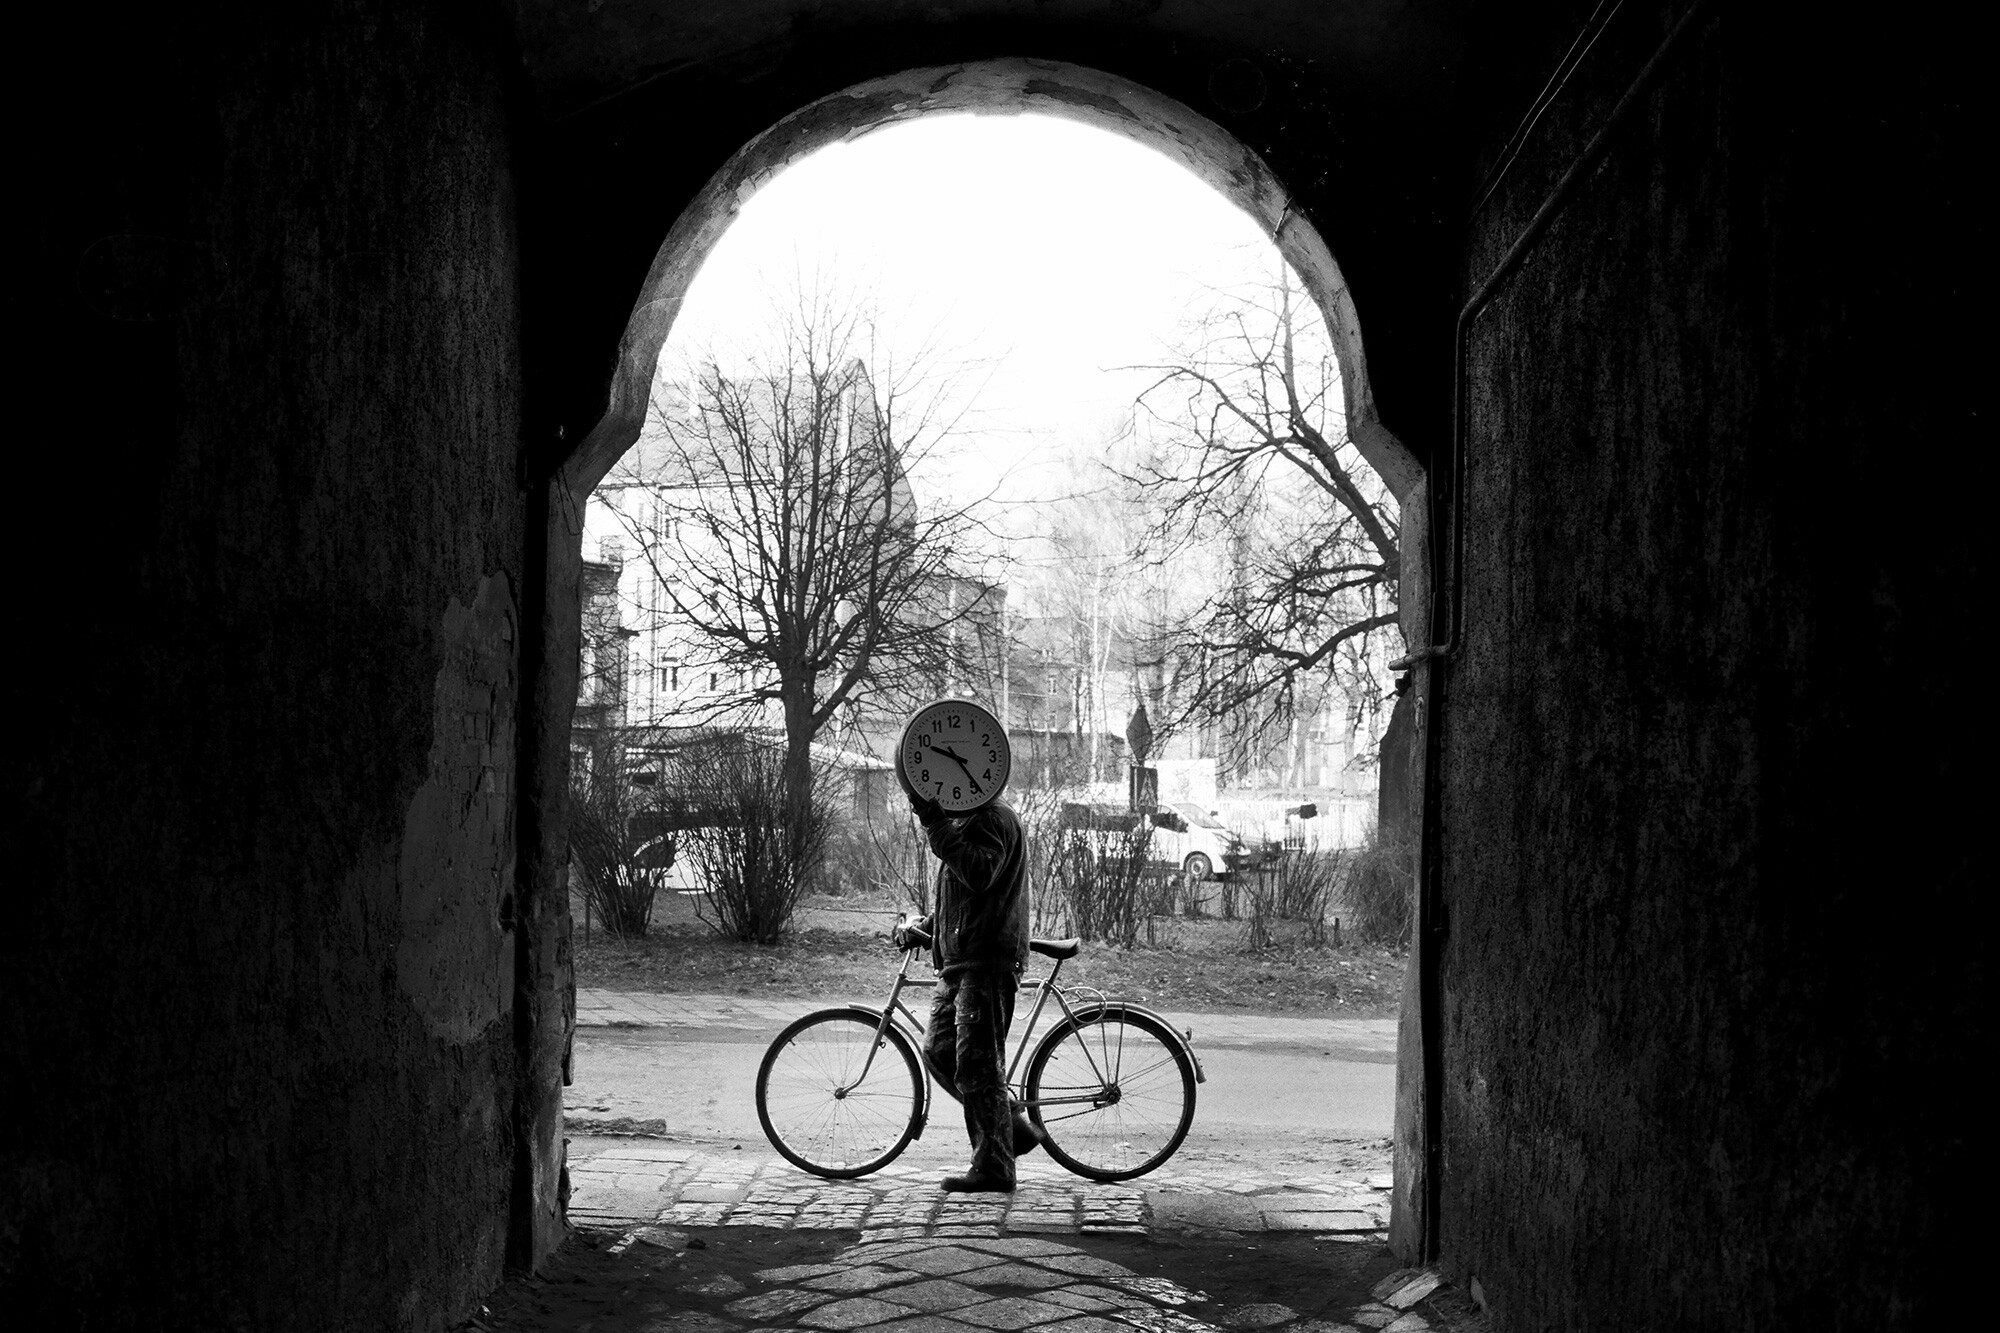 «Затмение времени», Черняховск, Калининградская область, 2013 год. Фотограф Борис Регистер